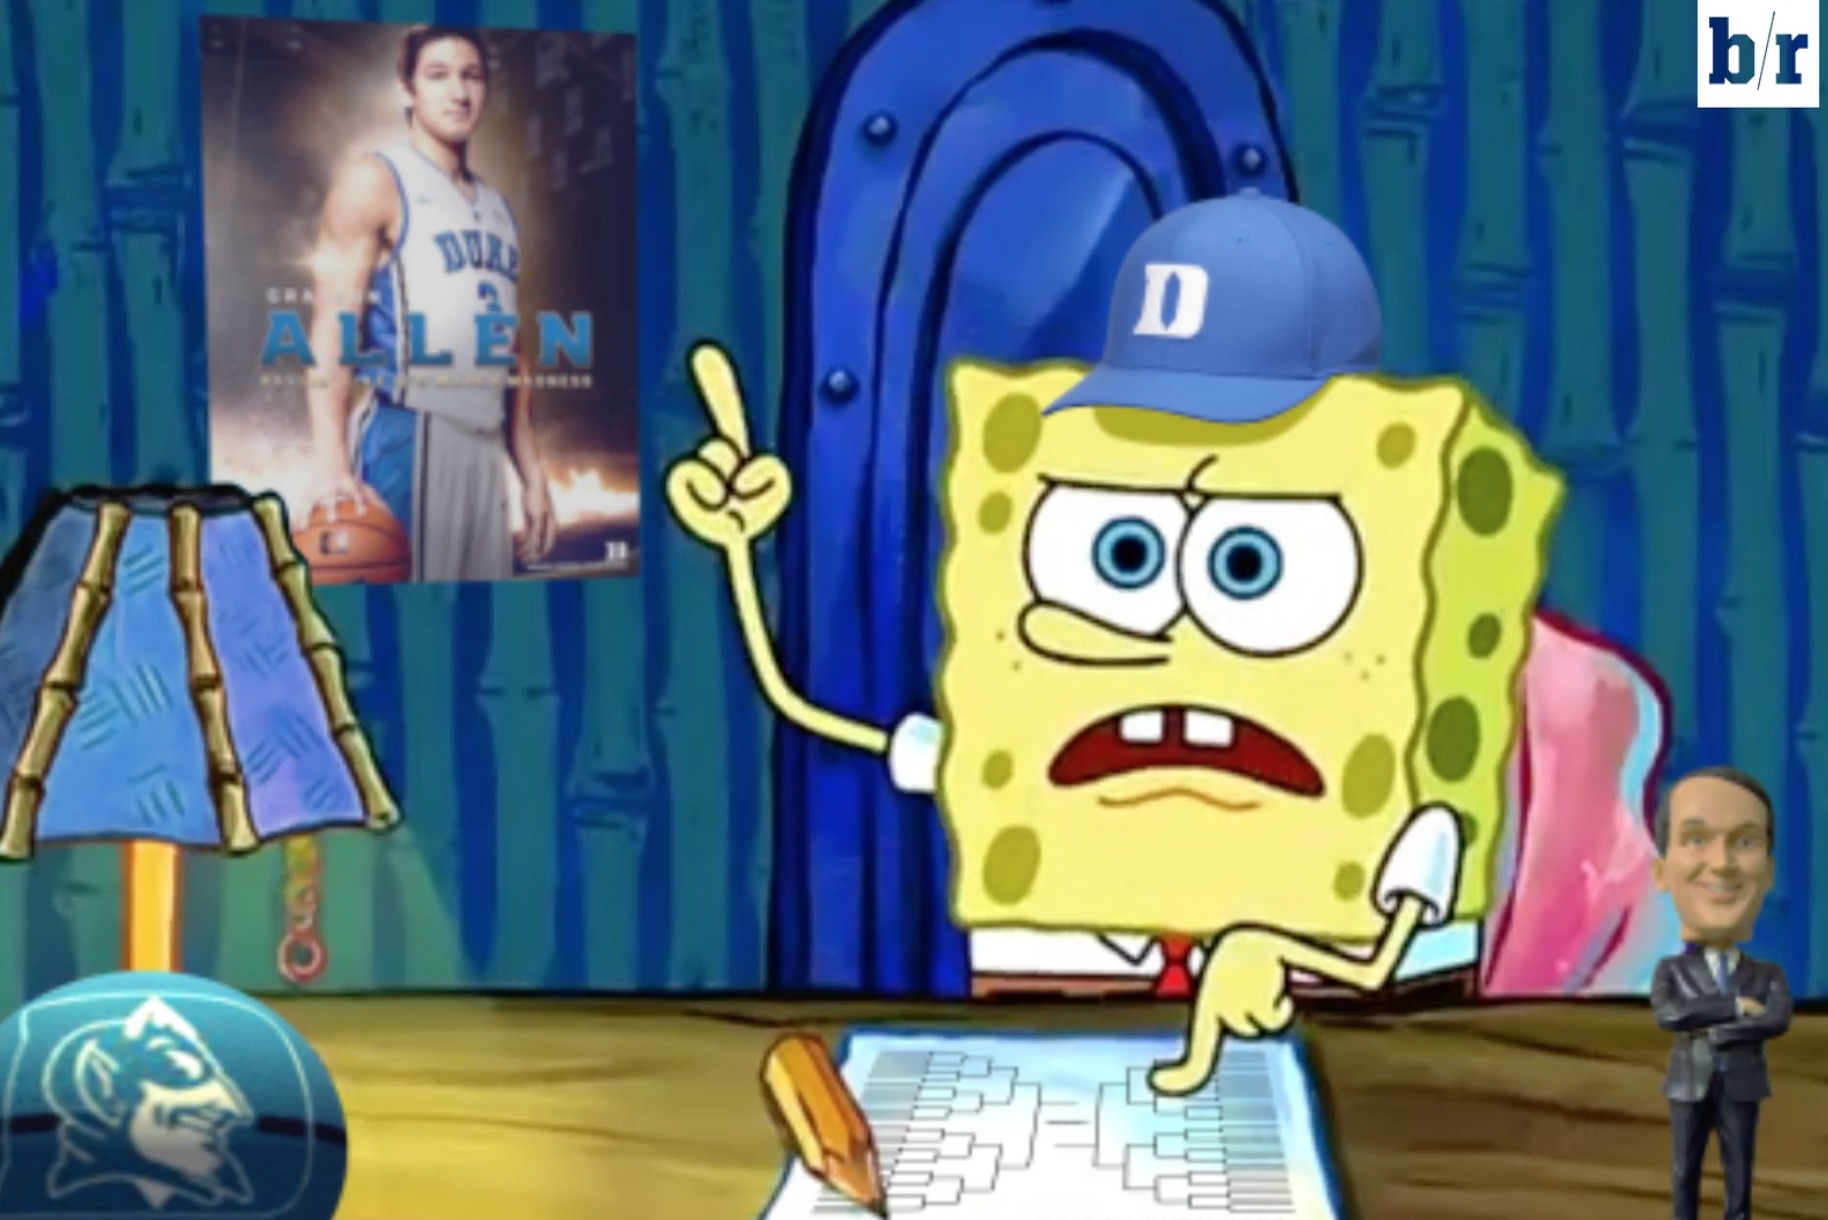 Duke Fan SpongeBob SquarePants Fills Out NCAA Bracket In Parody Of